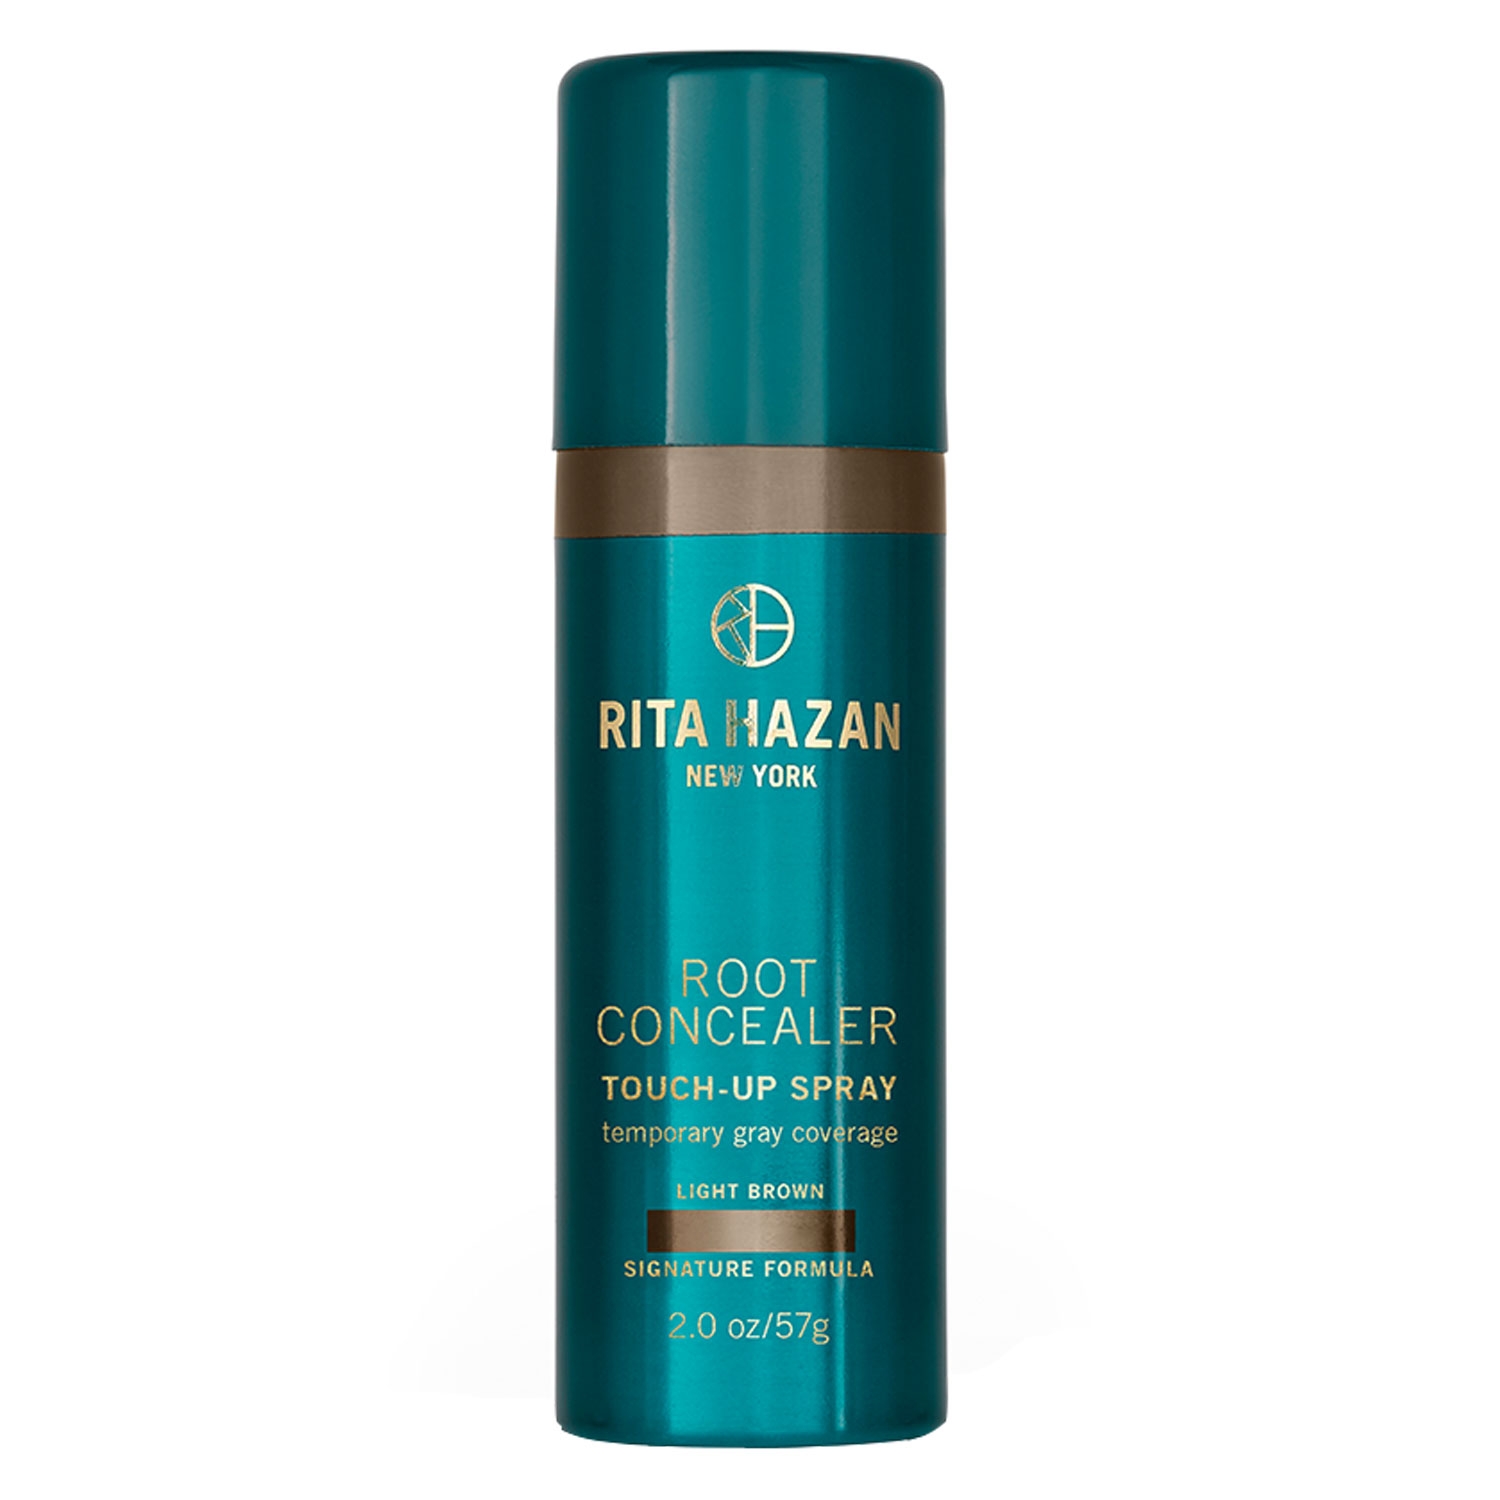 Produktbild von Rita Hazan New York - Root Concealer Touch-Up Spray Light Brown